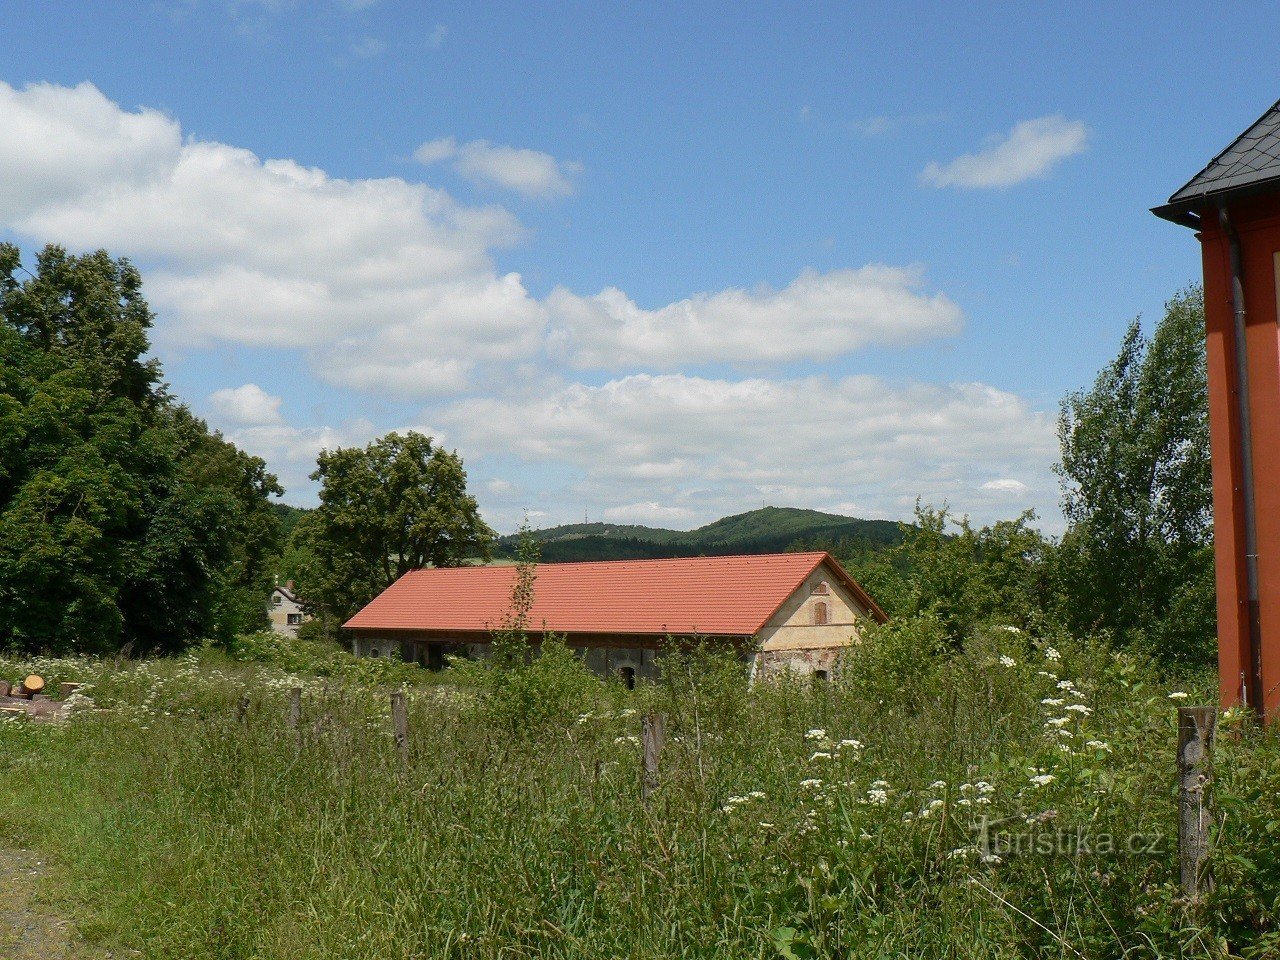 Tetětice, gårdsbyggnad i bakgrunden av Doubrava